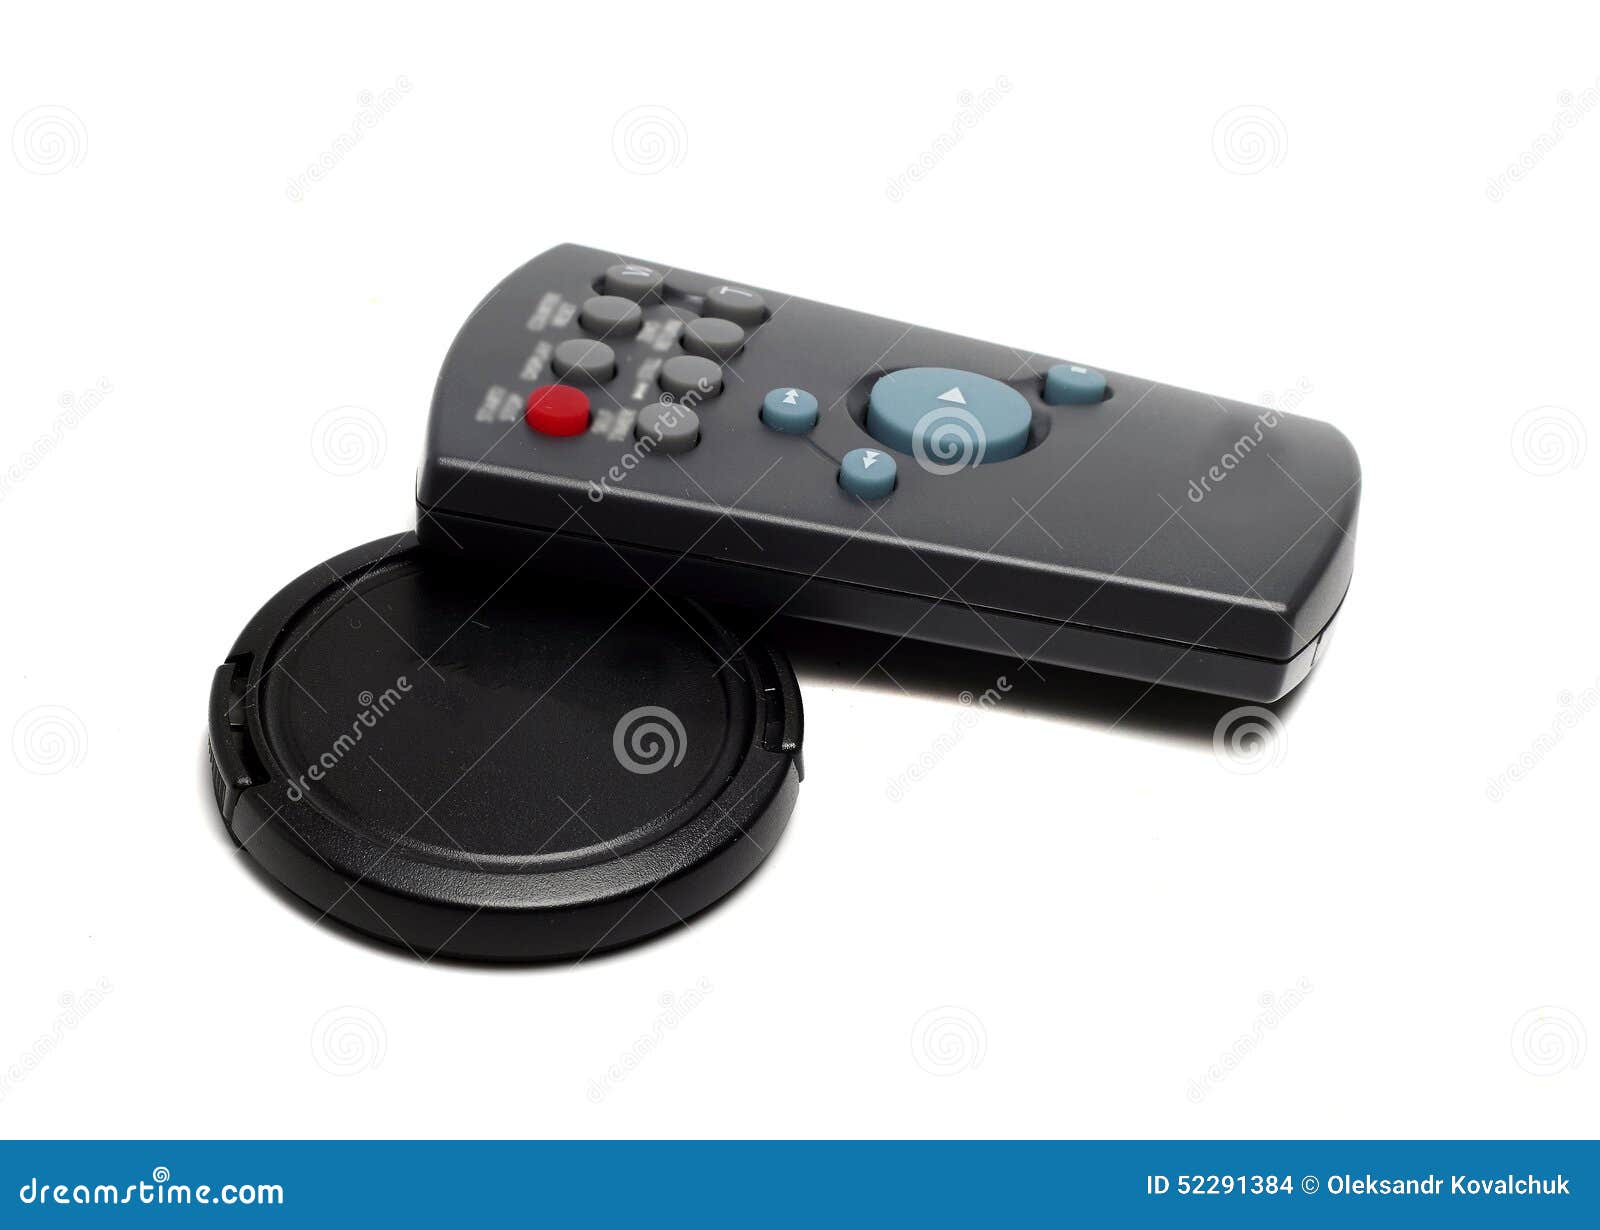 dameware mini remote control portable